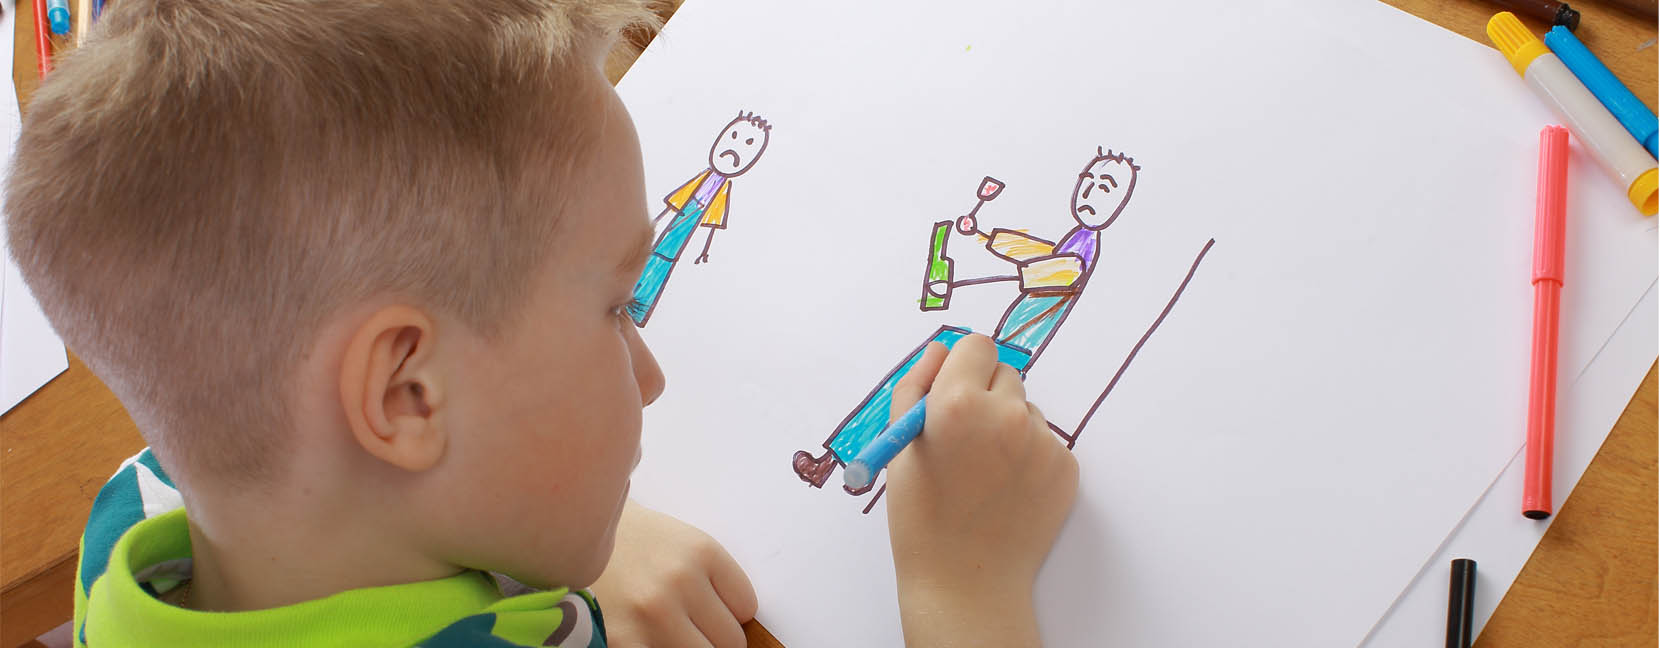 Bambino che disegna delle figure umane